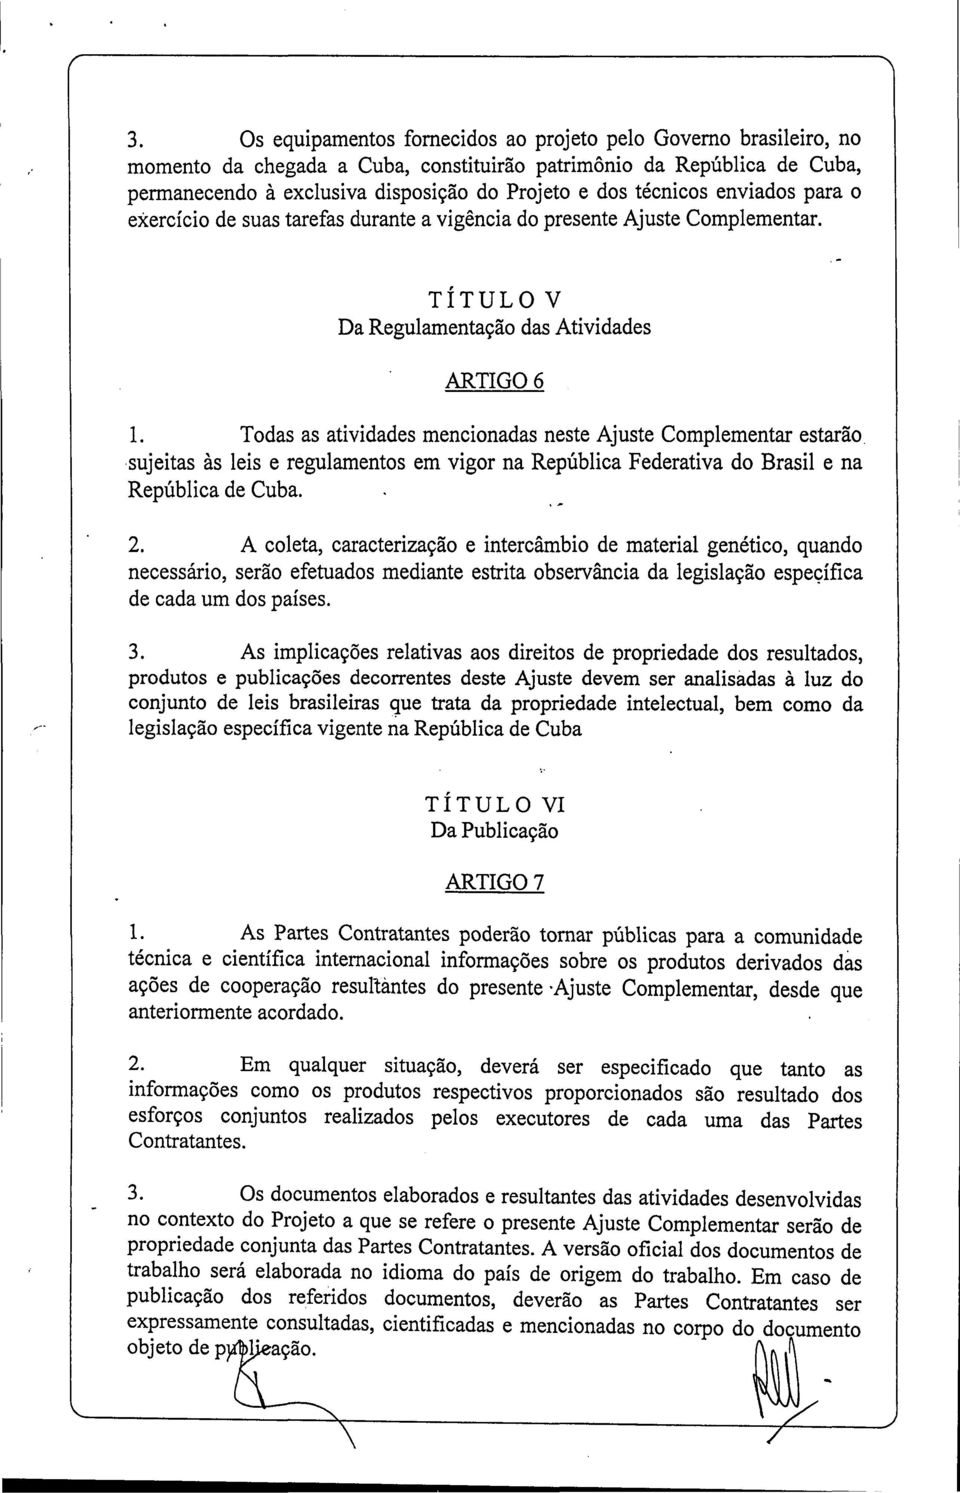 Todas as atividades mencionadas neste Ajuste Complementar estarão sujeitas às leis e regulamentos em vigor na República Federativa do Brasil e na República de Cuba. 2.